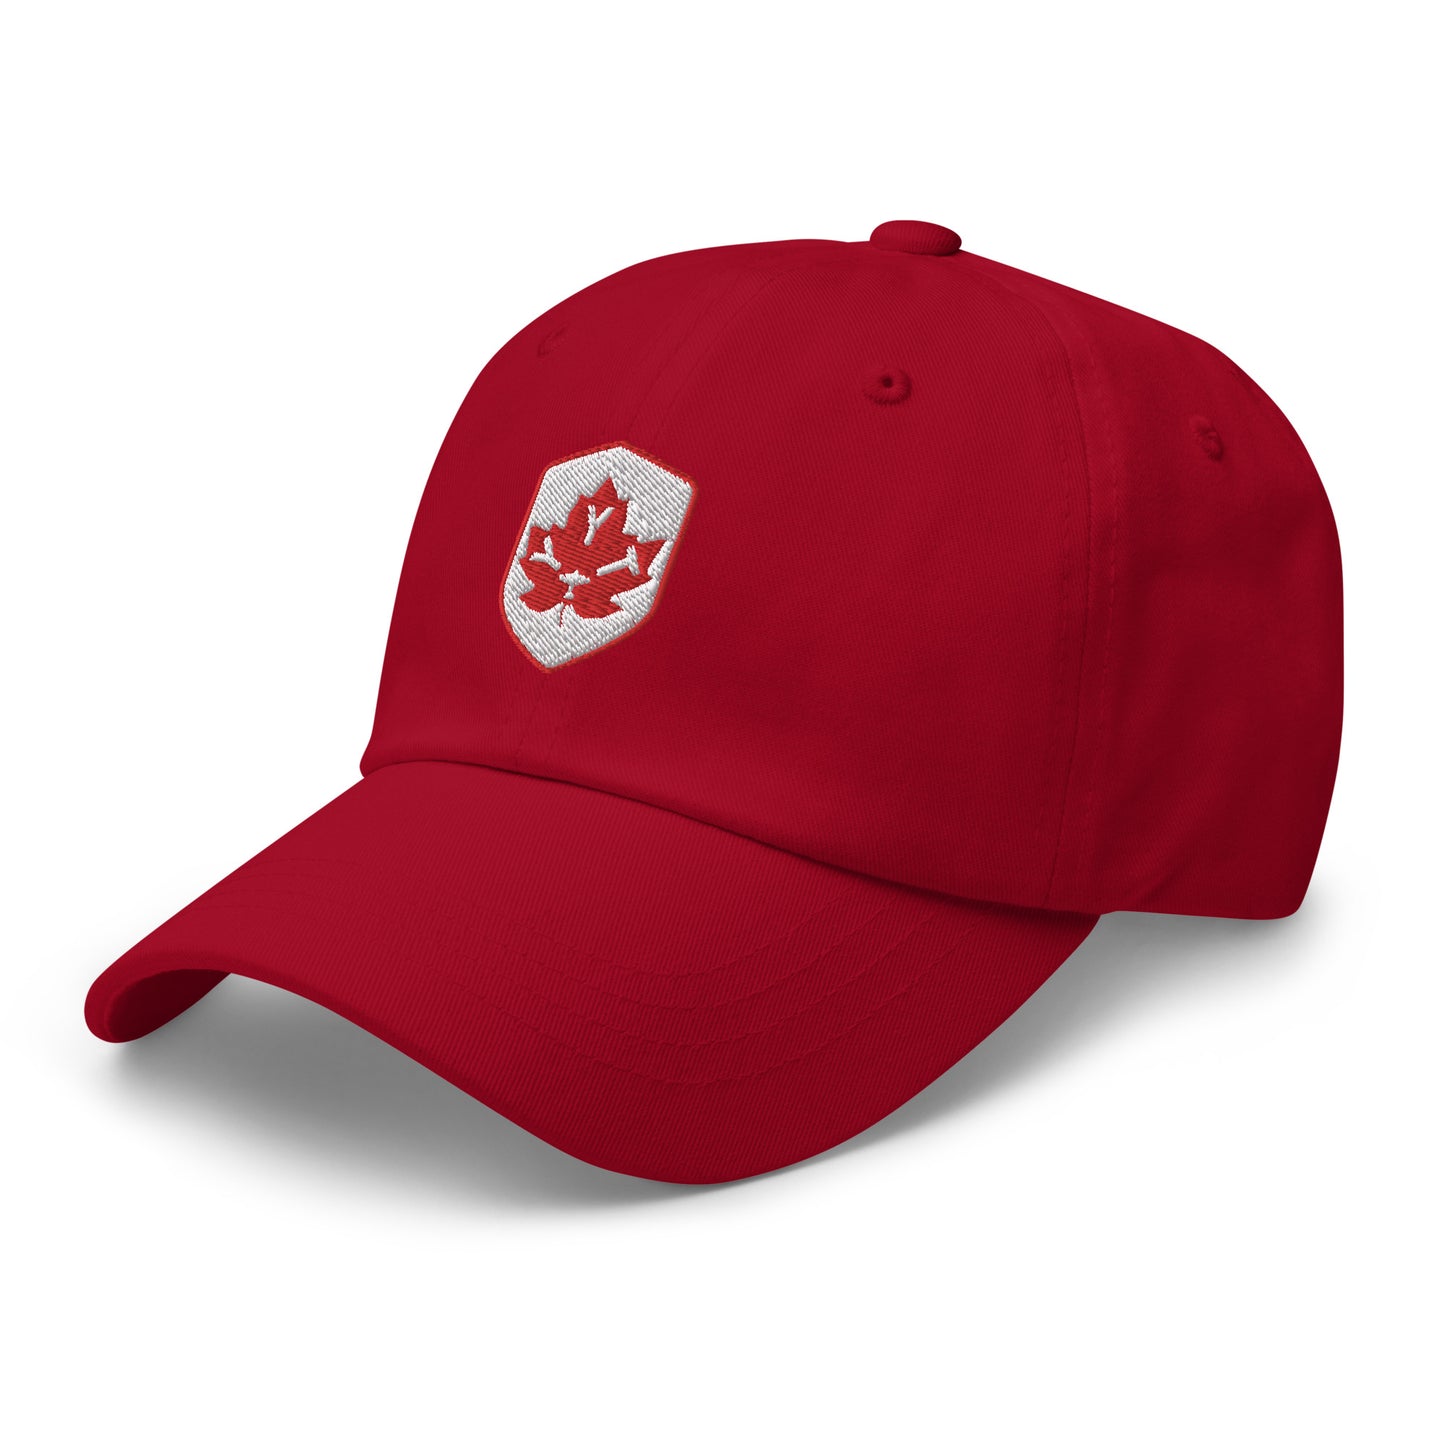 Maple Leaf Baseball Cap - Red/White • YYT St. John's • YHM Designs - Image 16